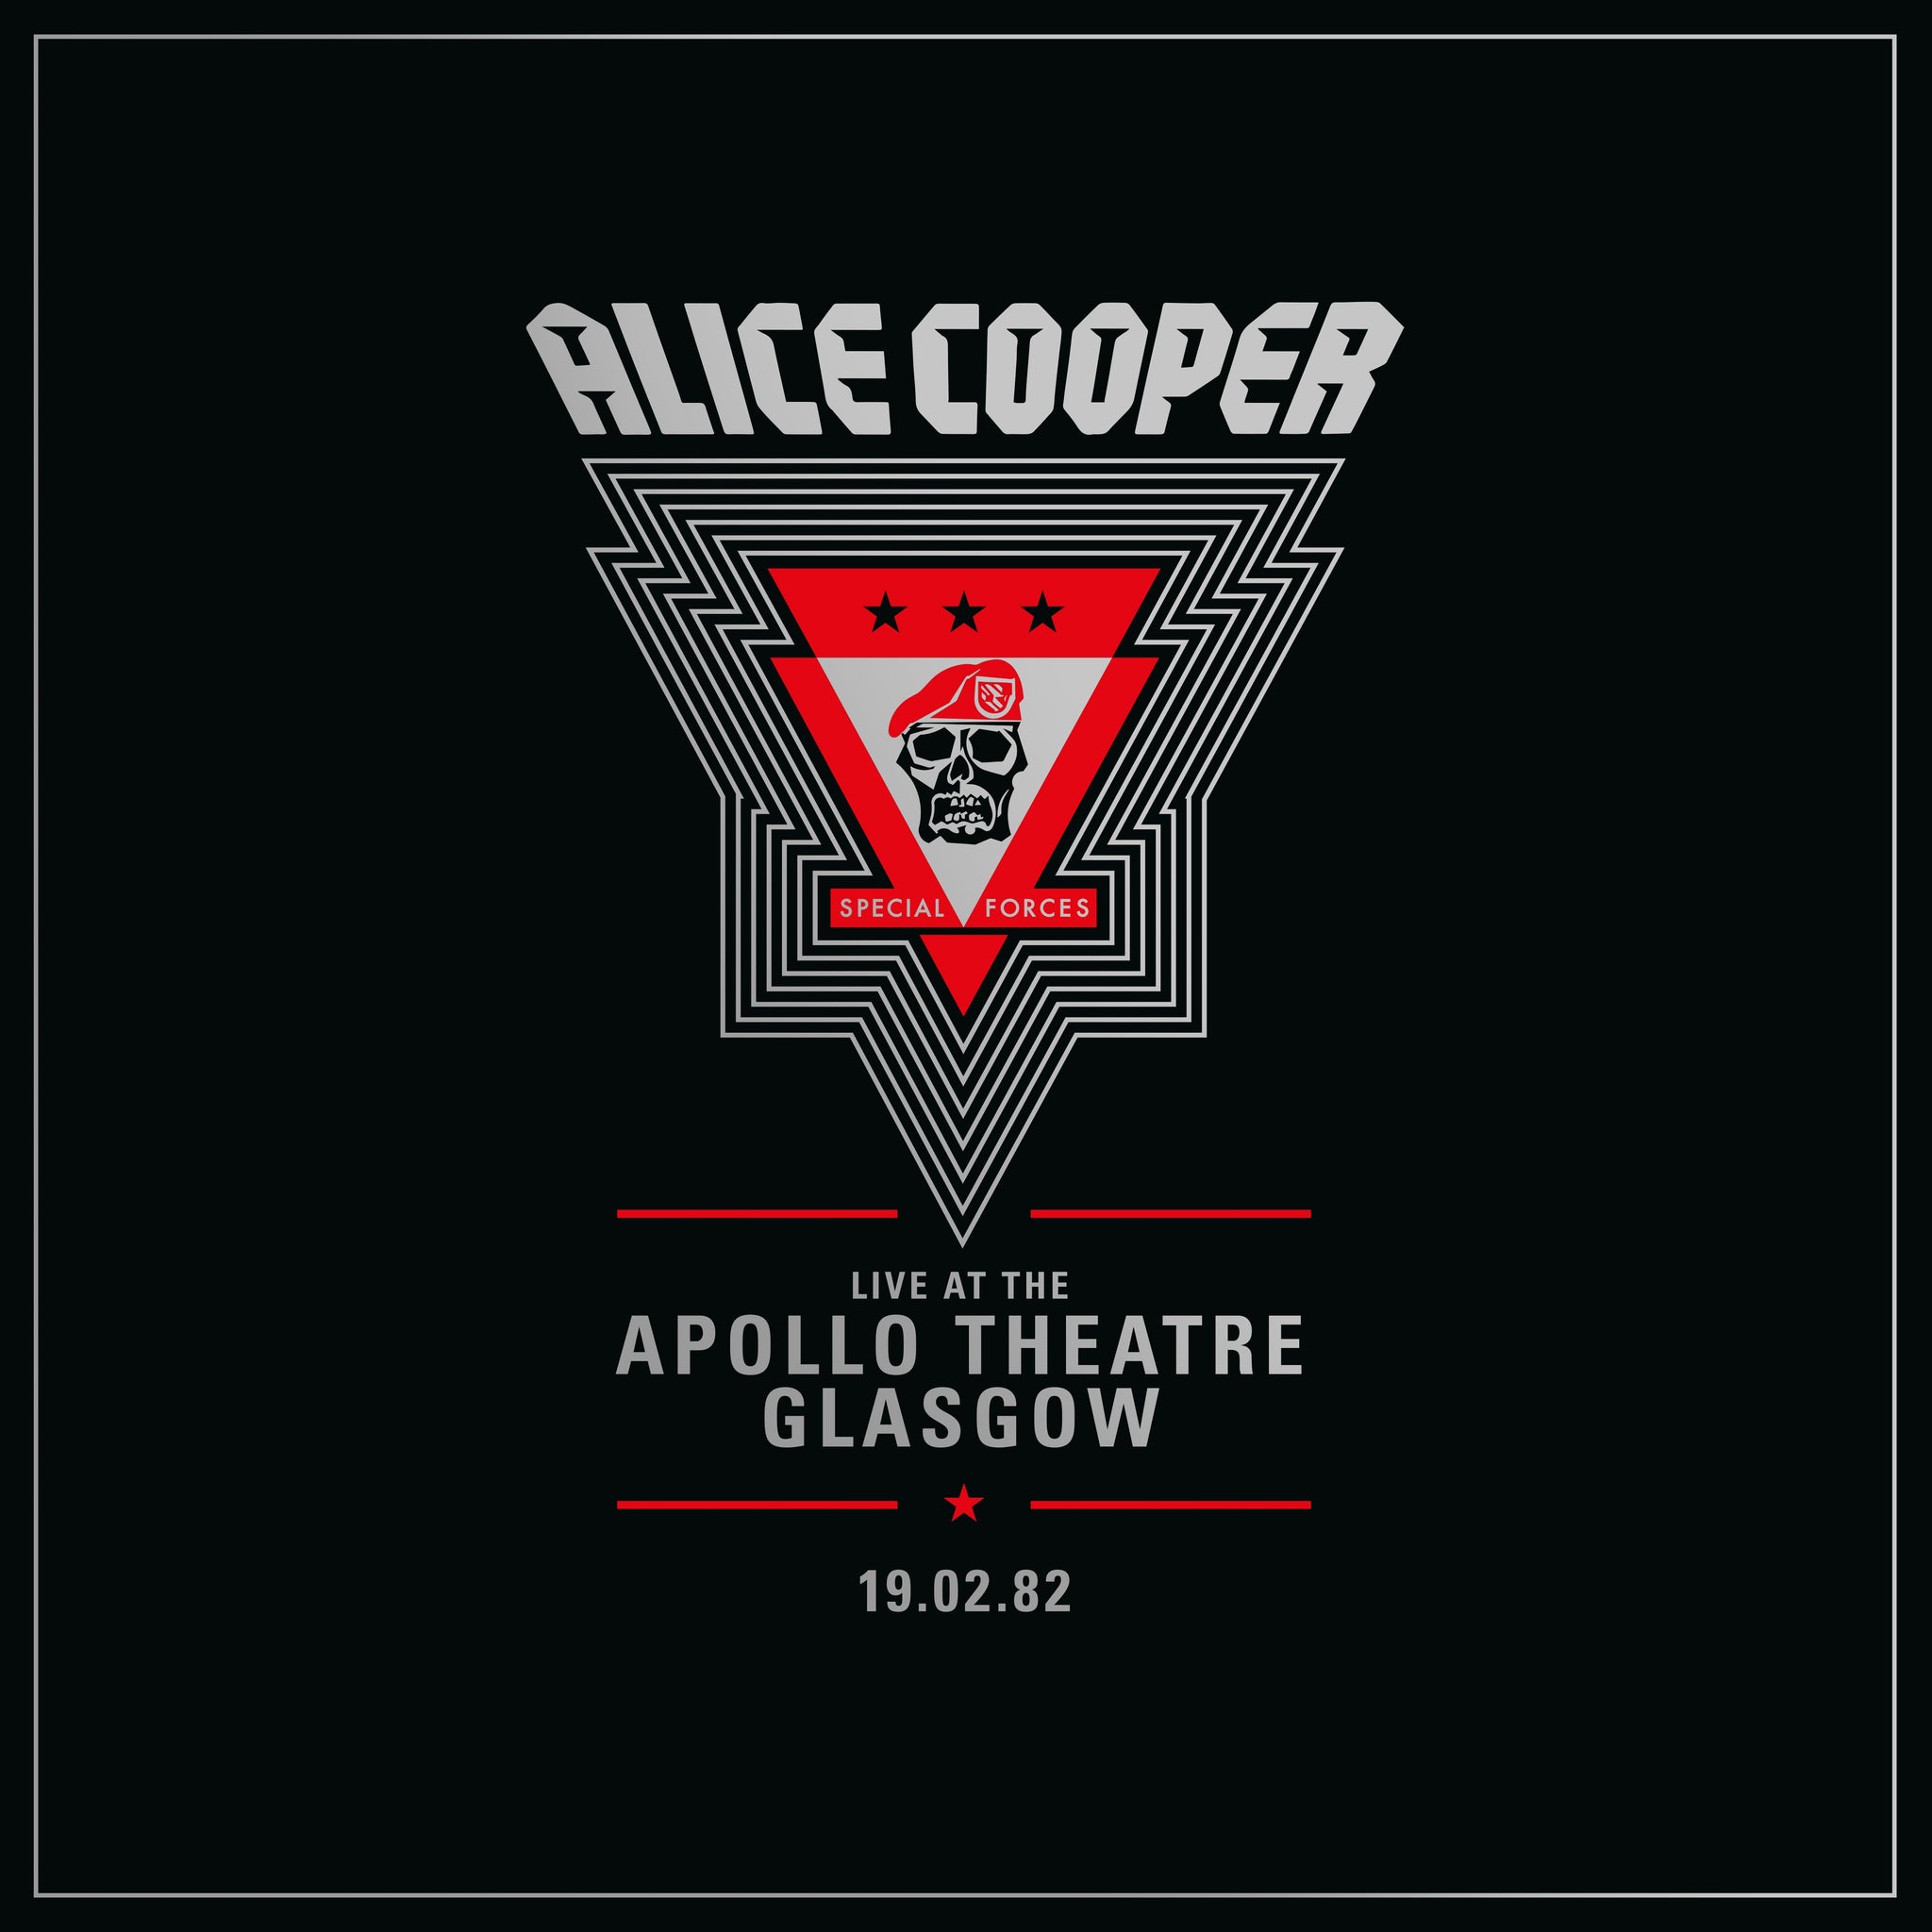 Alice Cooper - Live From The Apollo Theatre Glasgow (19 Feb 1982)